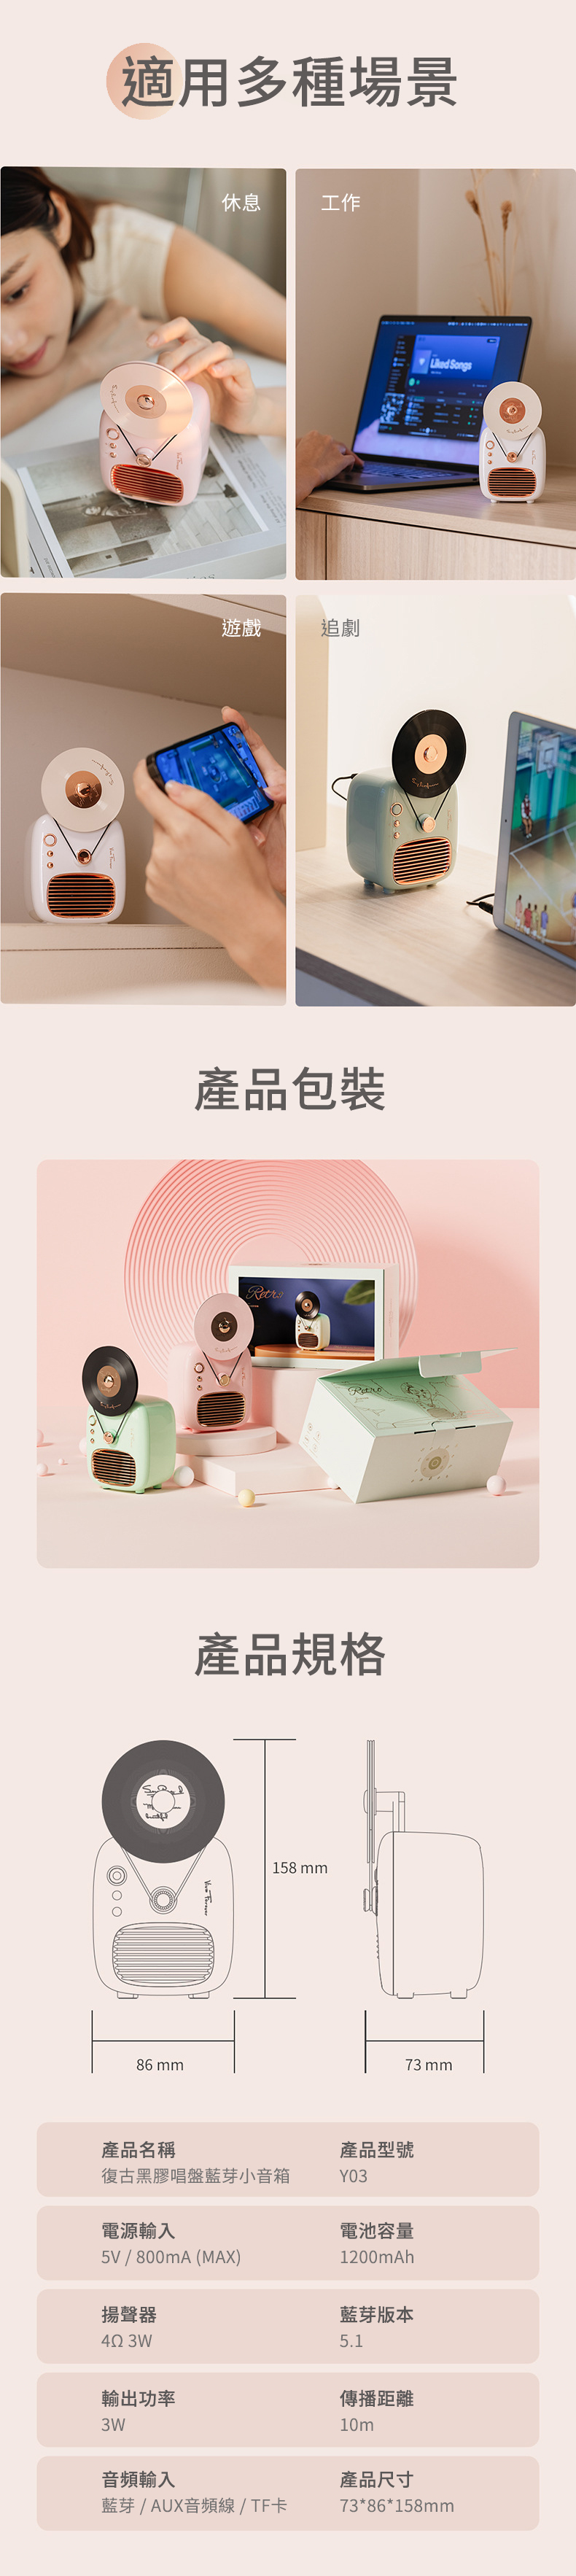 【3/29~5/31畢業季88折優惠】創意小物館 復古黑膠唱盤藍芽小音箱 粉色